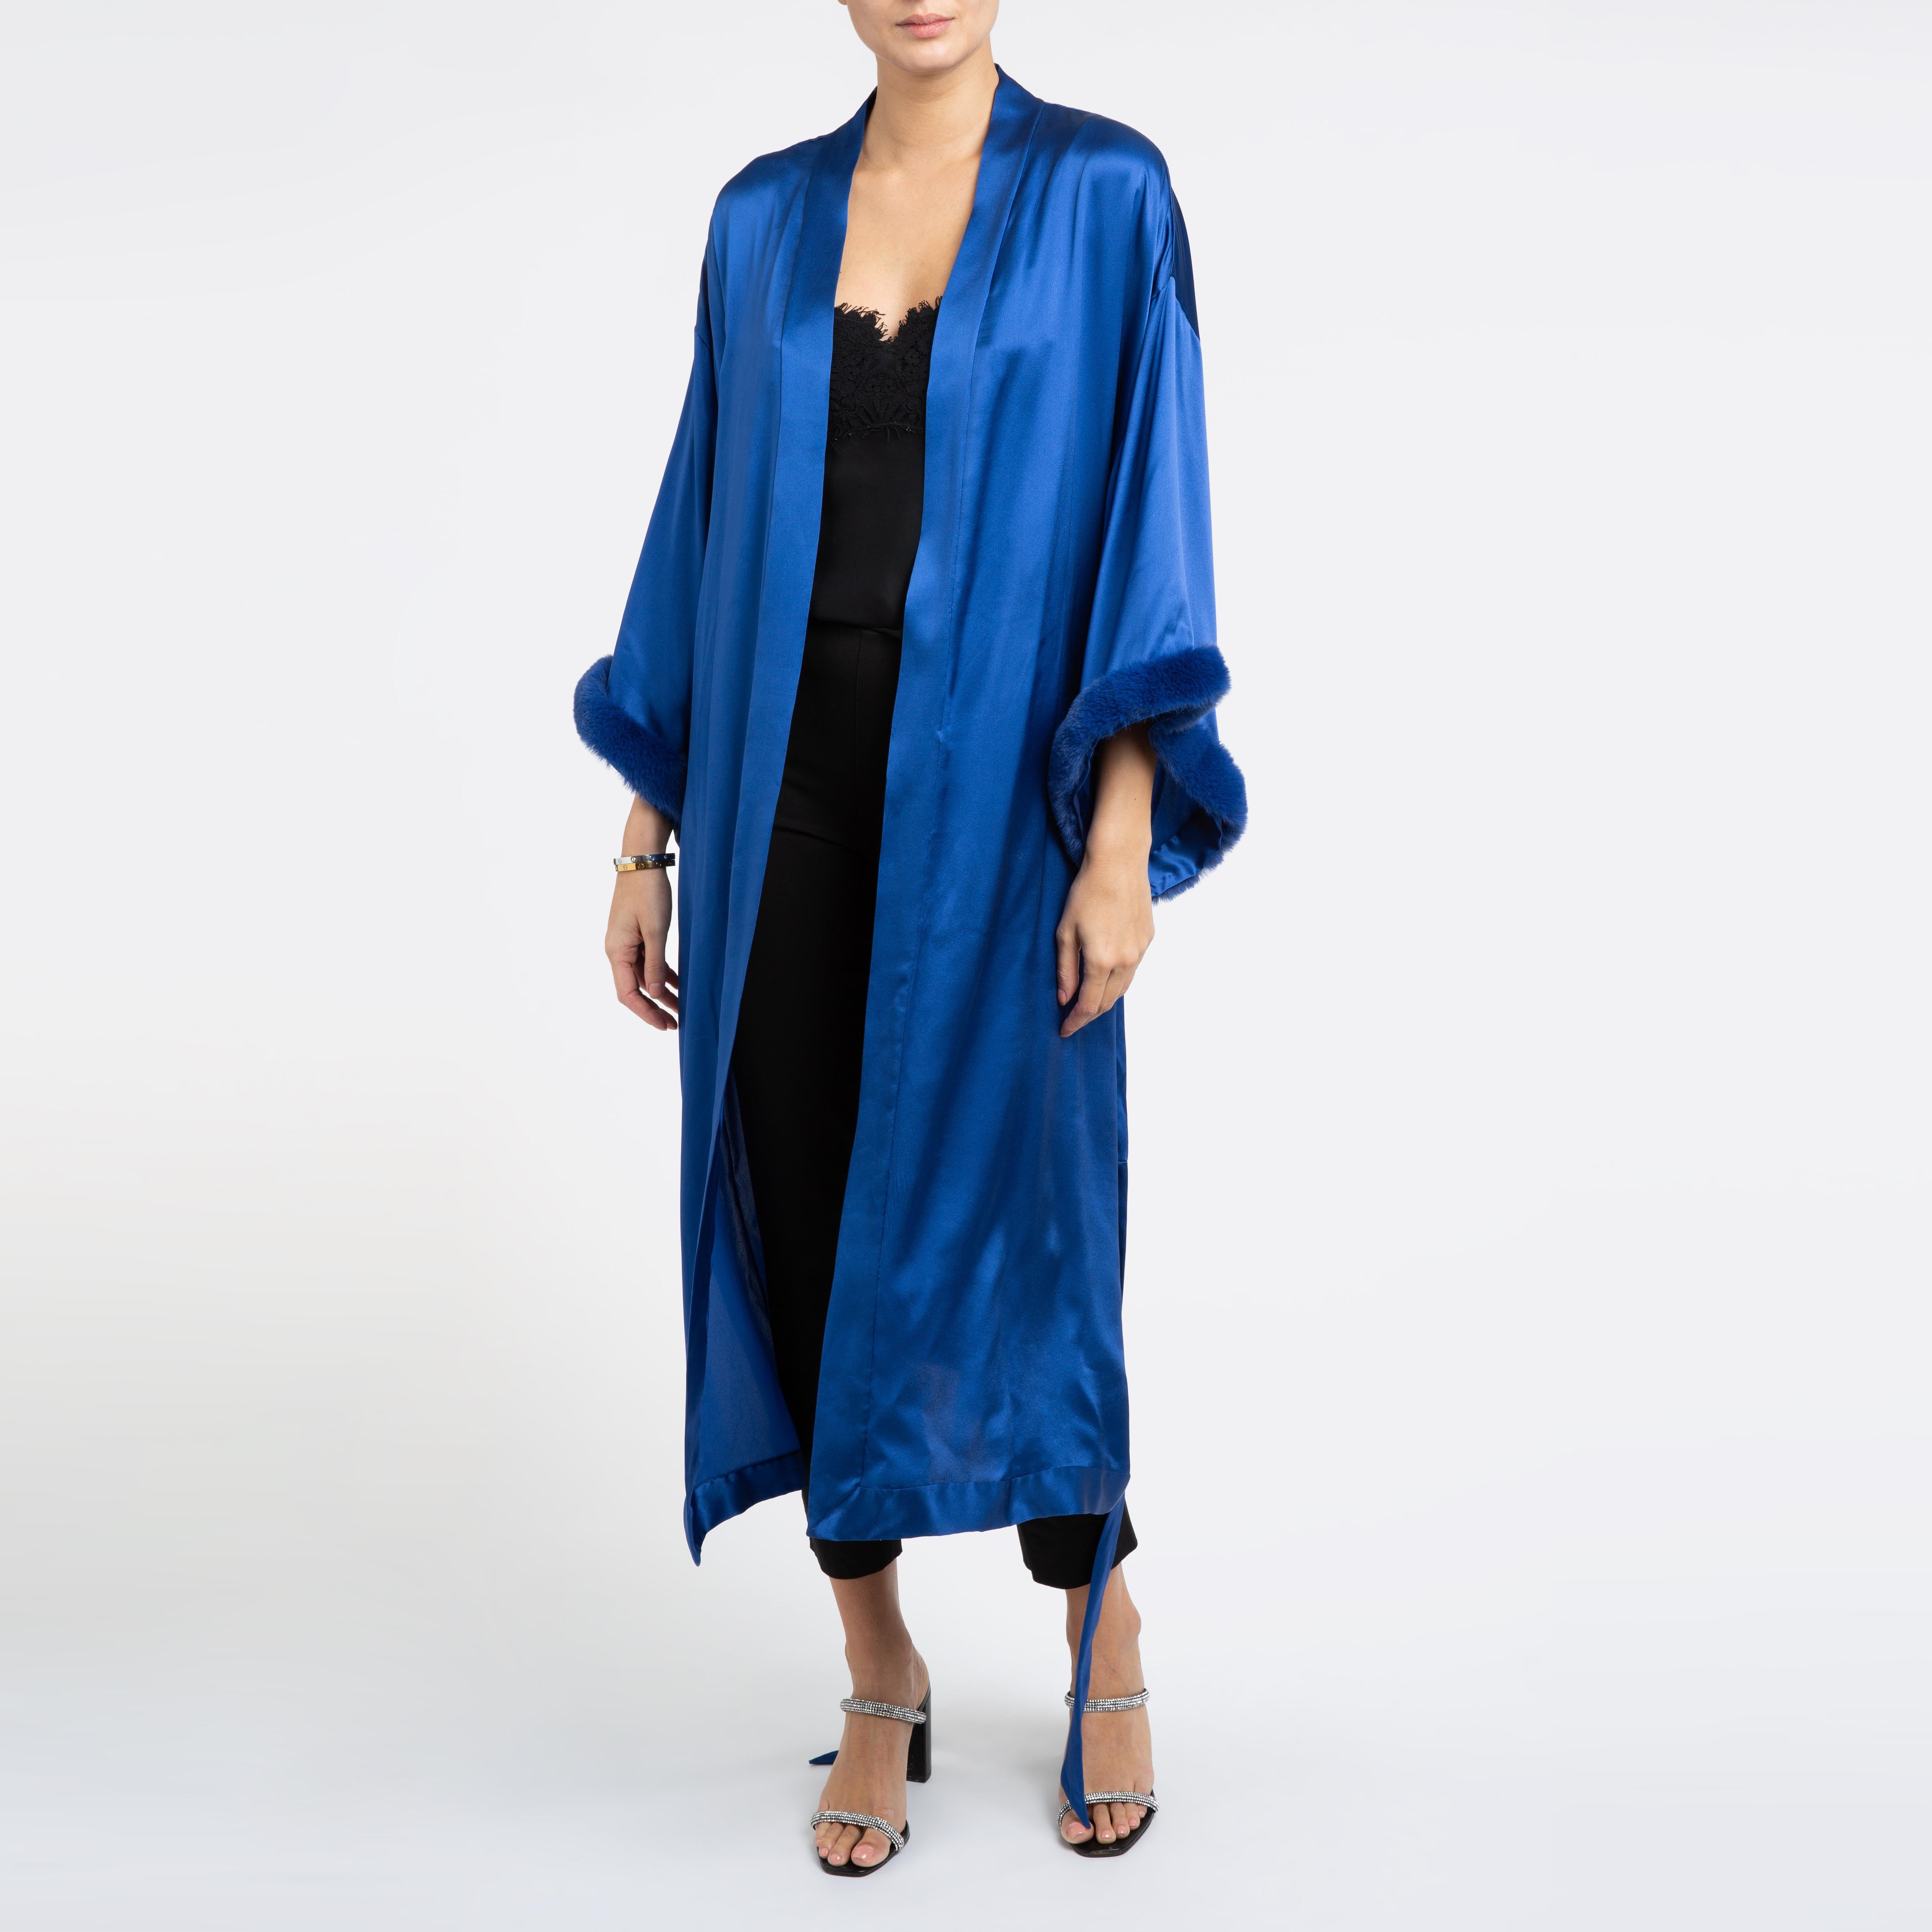 Verheyen London Blauer Kimono aus italienischem Seidensatin mit Kunstfell - Einheitsgröße 

Der Kimono von Verheyen London ist das perfekte Kleid für die Abendgarderobe oder ein Mantelkleid, das man abends mit Jeans und Absätzen tragen kann. 